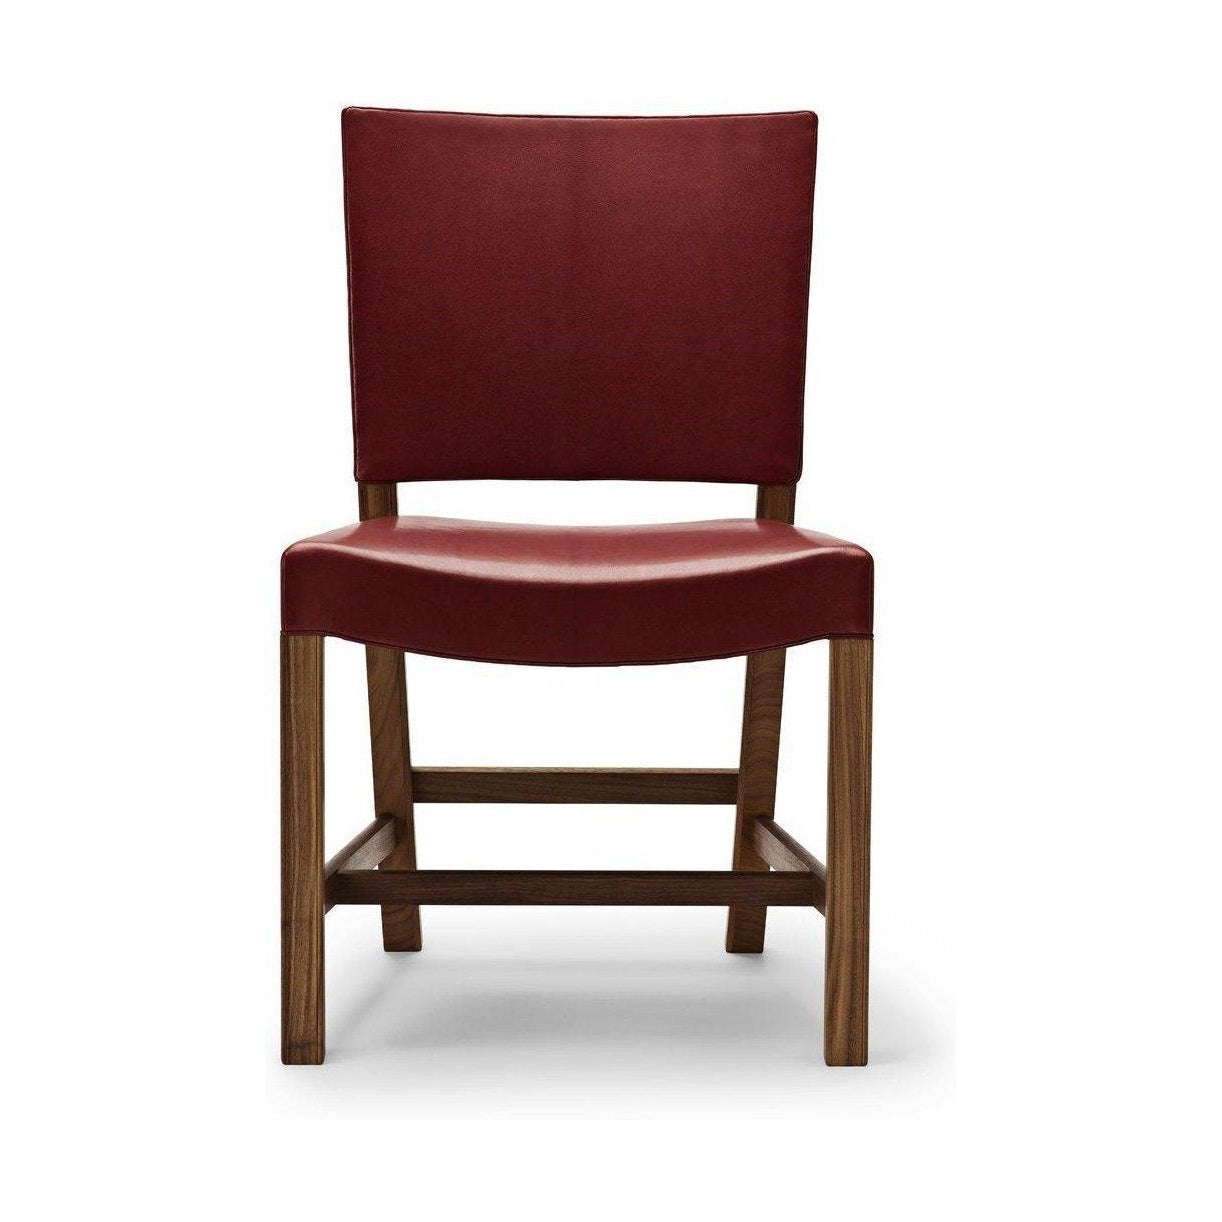 Carl Hansen KK47510 De rode stoel, gelakte walnoot/rode geitenhuid